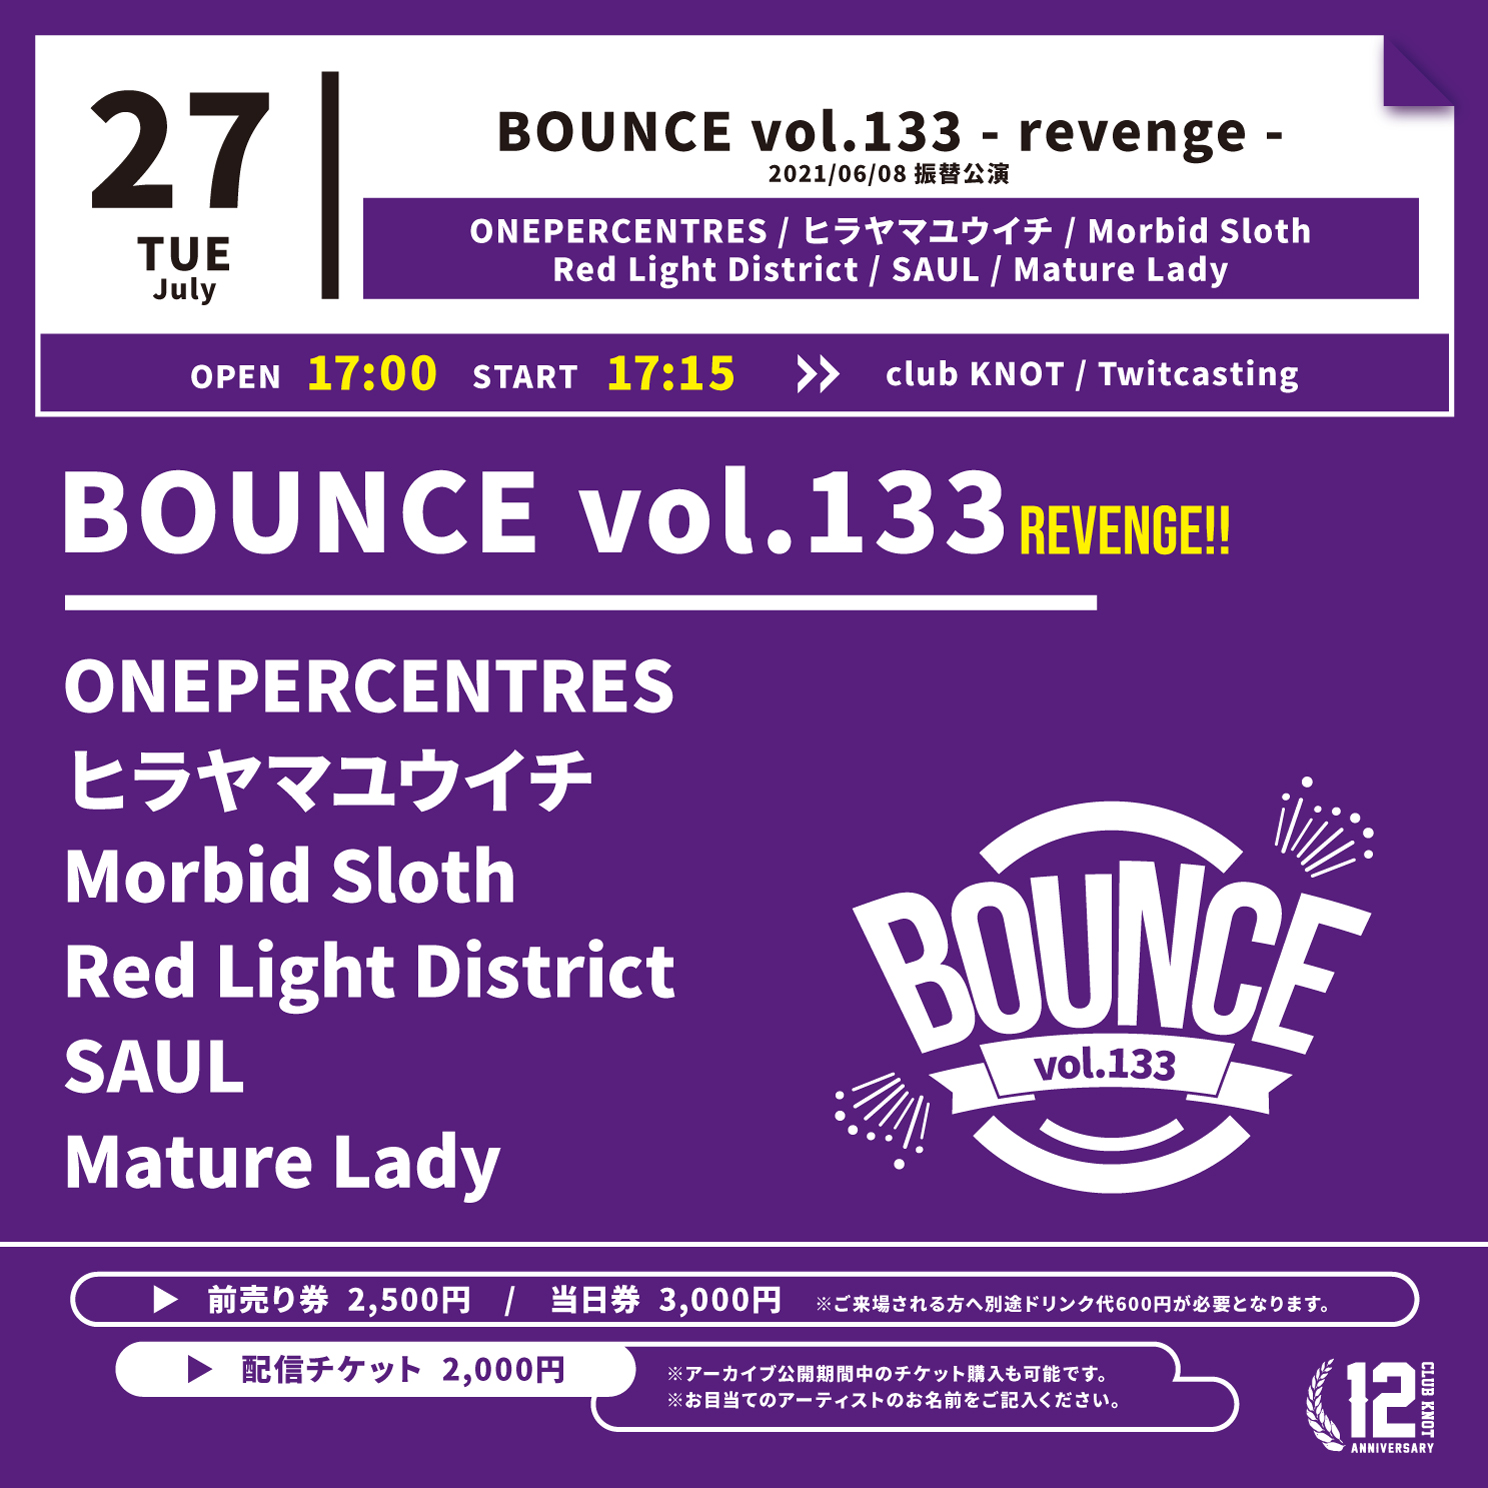 BOUNCE Vol.133 - revenge -